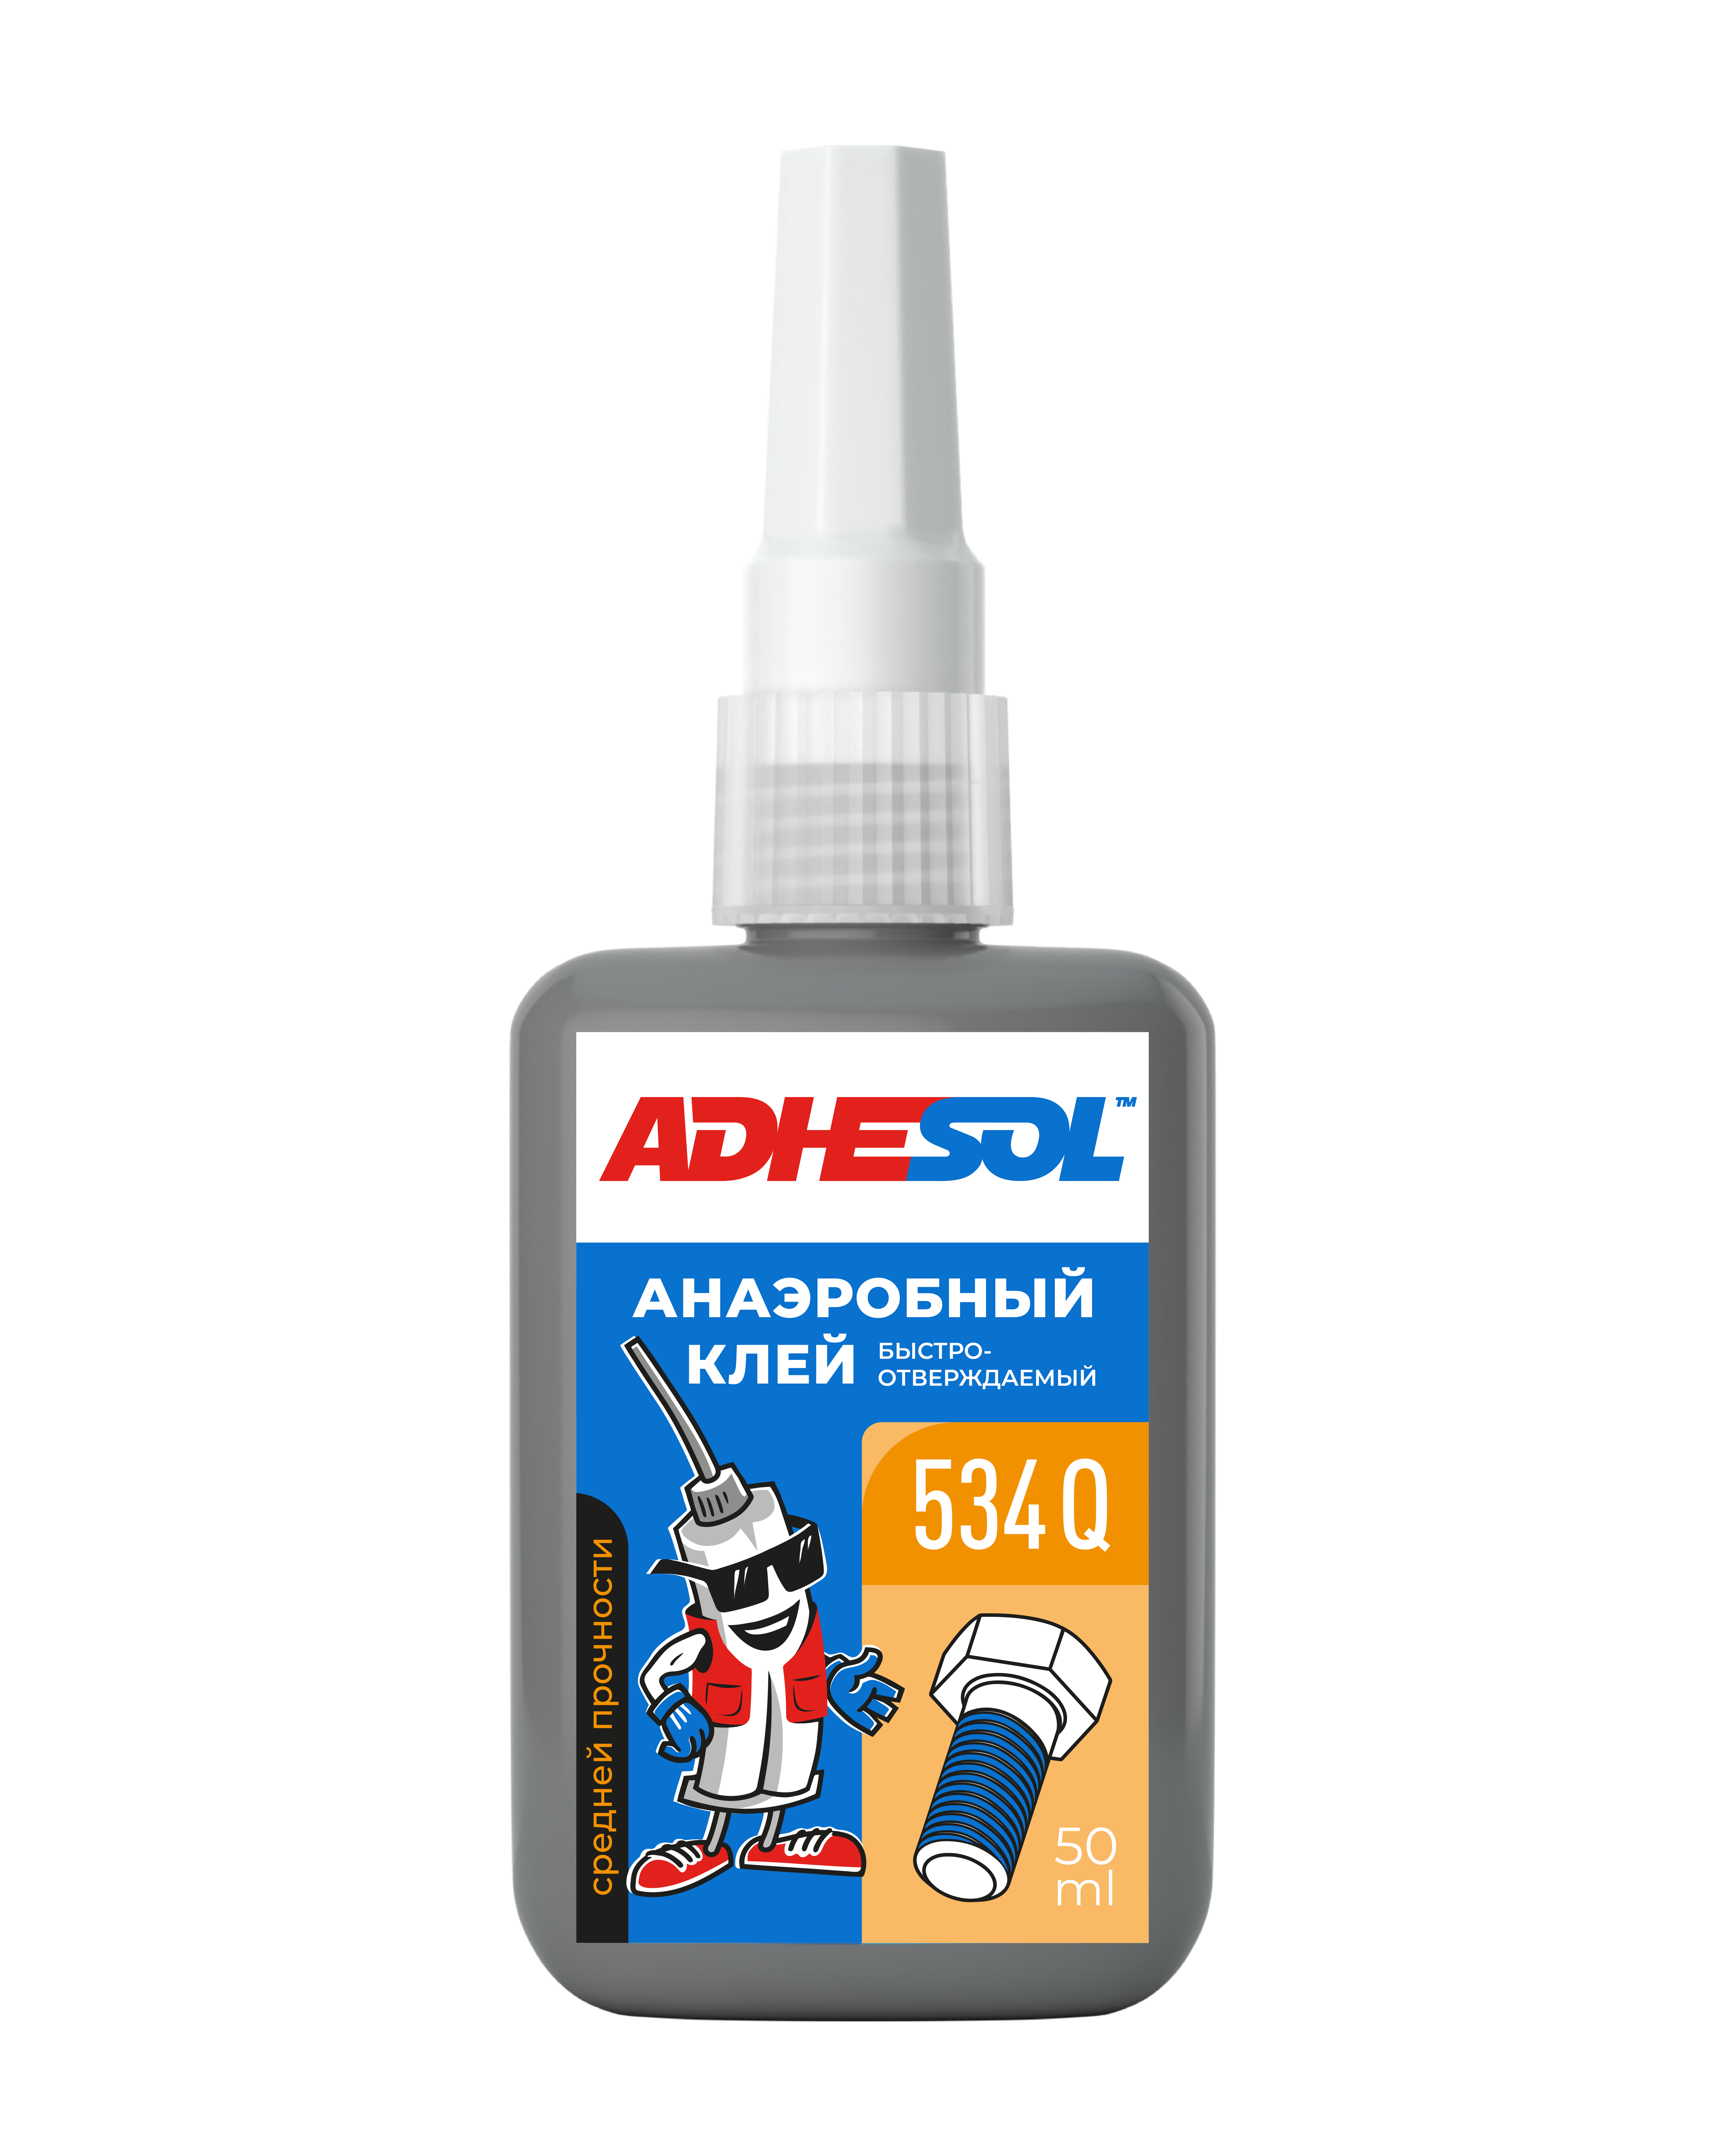 Анаэробный клей средней  прочности для резьбовых соединений ADHESOL 534Q 50ml